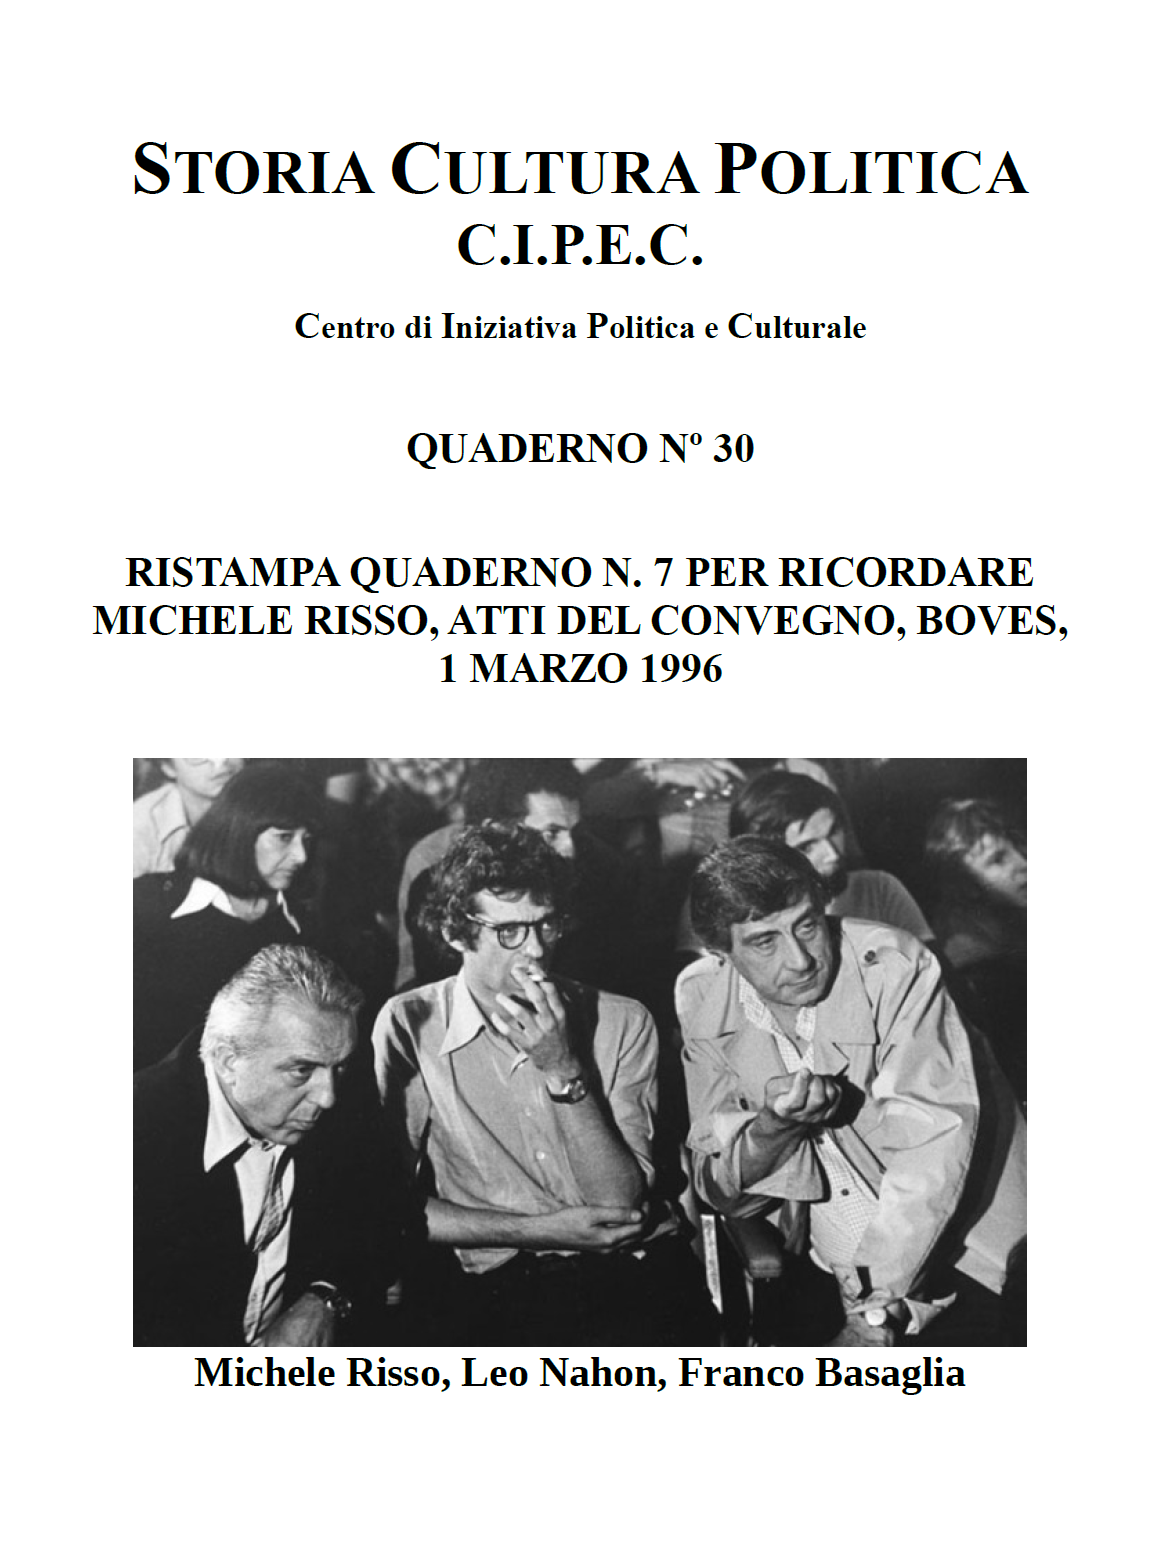 Michele Risso Convegno Boves, Copertina Quaderno CIPEC numero 30